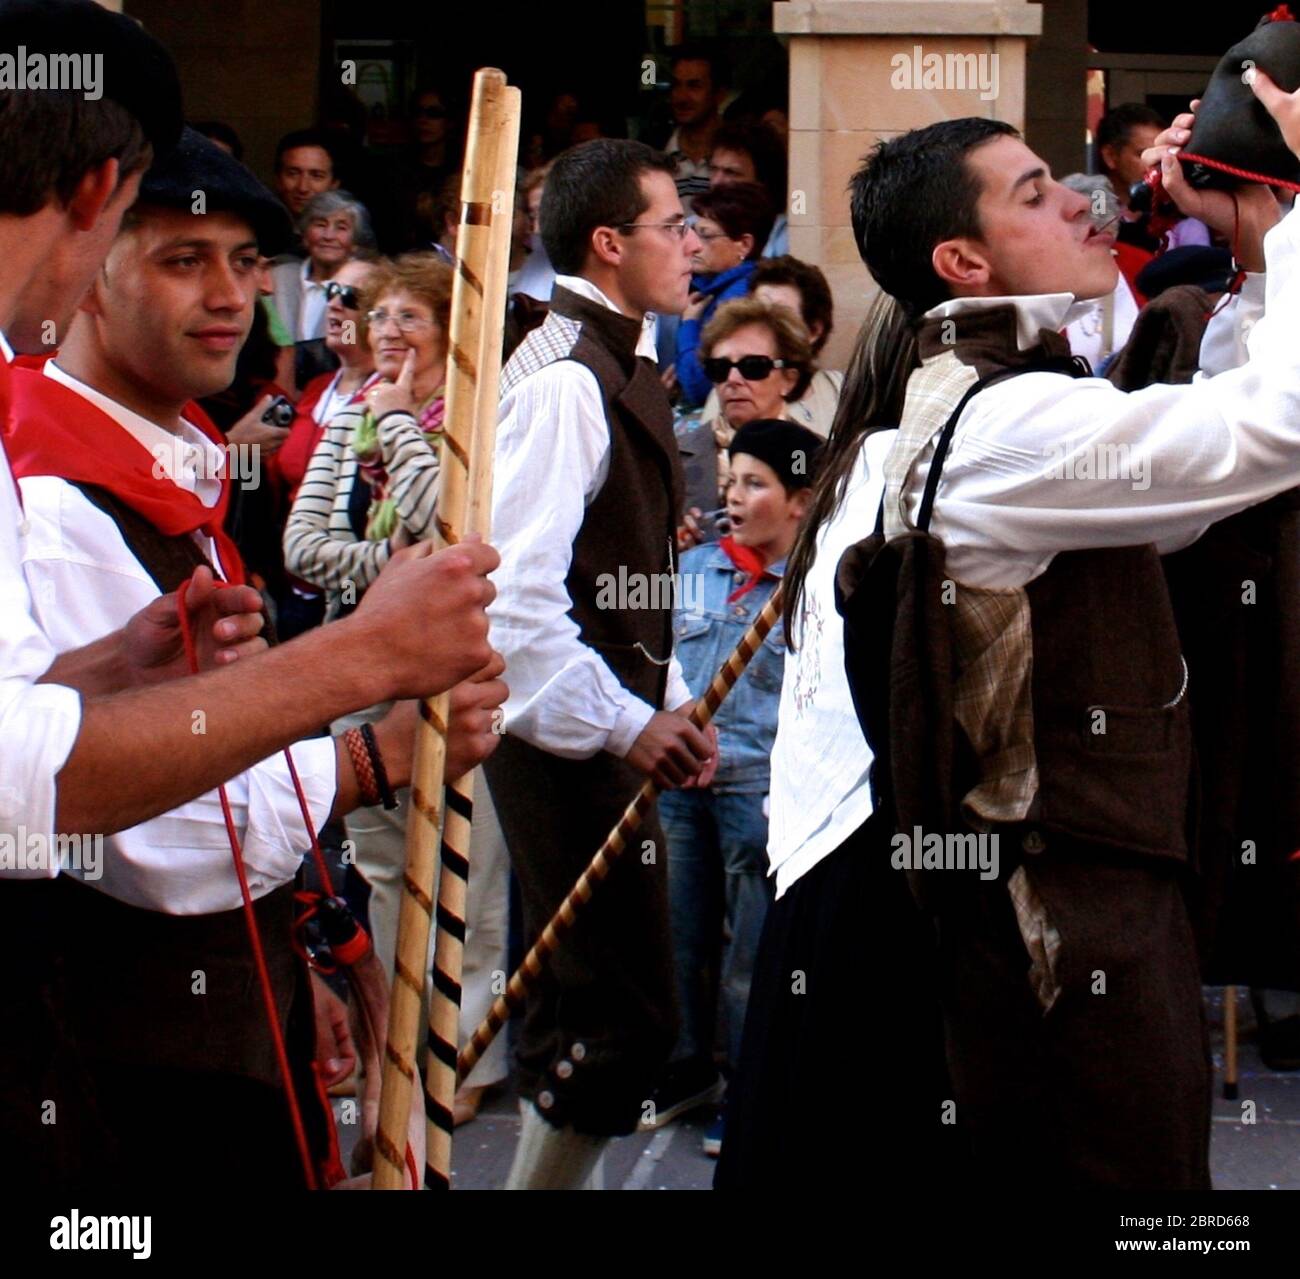 Fiestas of San Mateo (übersetzt als Parties of Saint Matthew) Männer in traditioneller Tracht trinken Wein aus Lederwein Bota (Tasche oder Tasche) Spanien Stockfoto